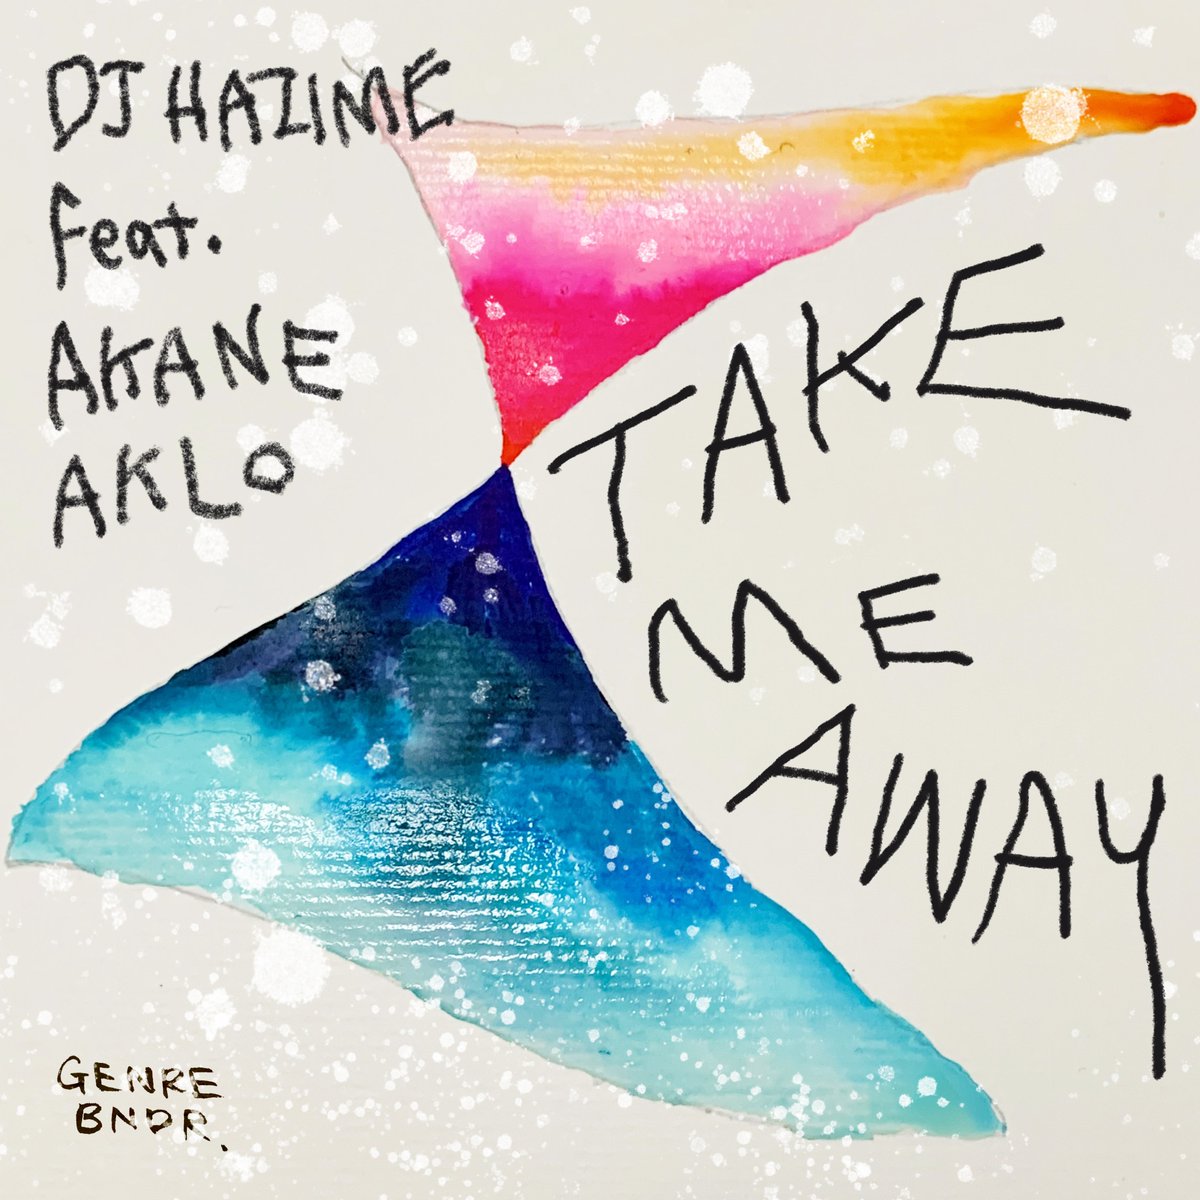 6月14日 (水) 00:00 配信  
DJ HAZIME- TAKE ME AWAY (feat. AKANE & AKLO)
with 
@djhazime
@SingerAkane
@ACKO1204
@DJ_4REST